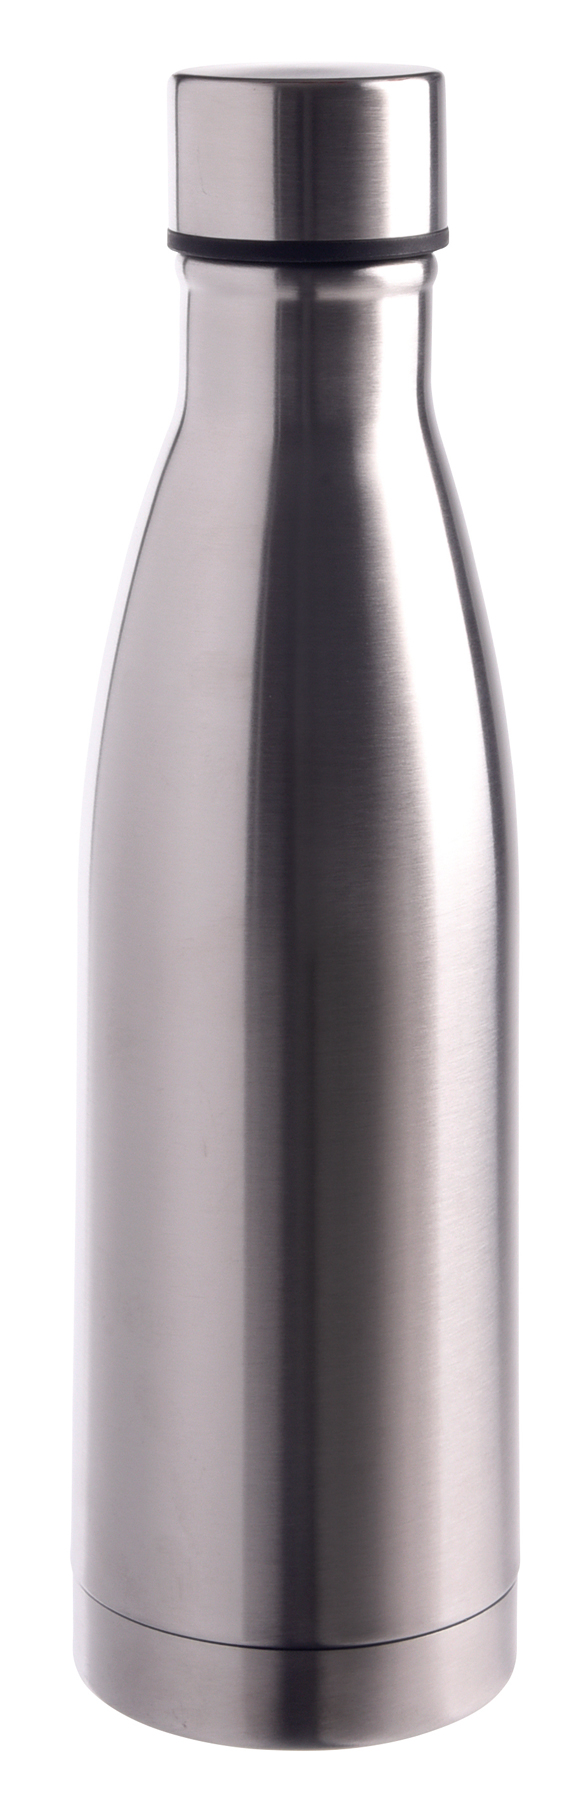 Vakuum-Trinkflasche LEGENDY - Silber